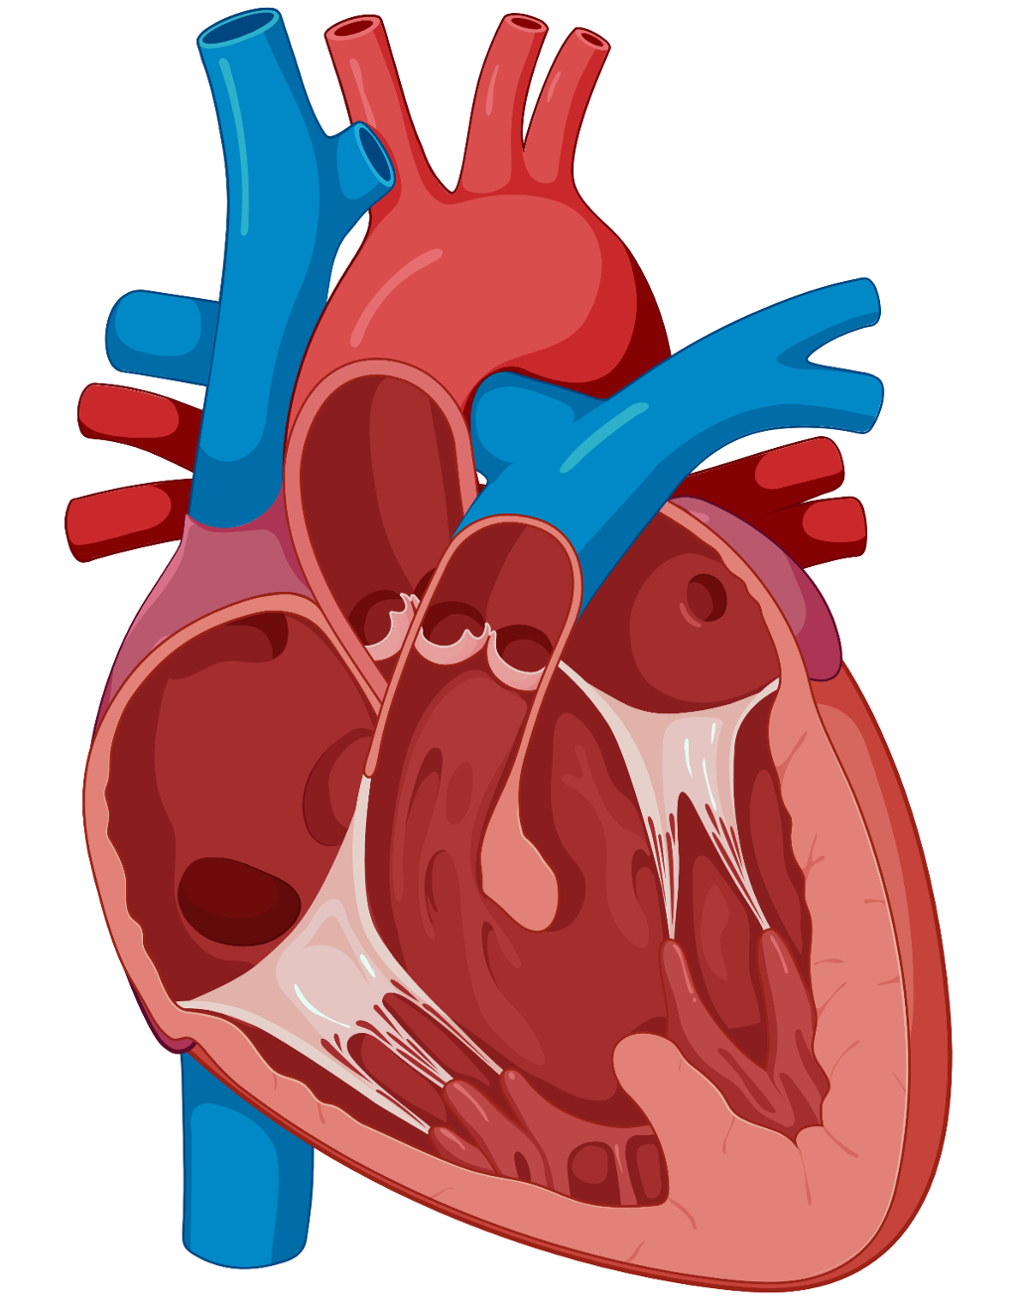 Tegning som viser hjerte med hull i hjerteskilleveggen